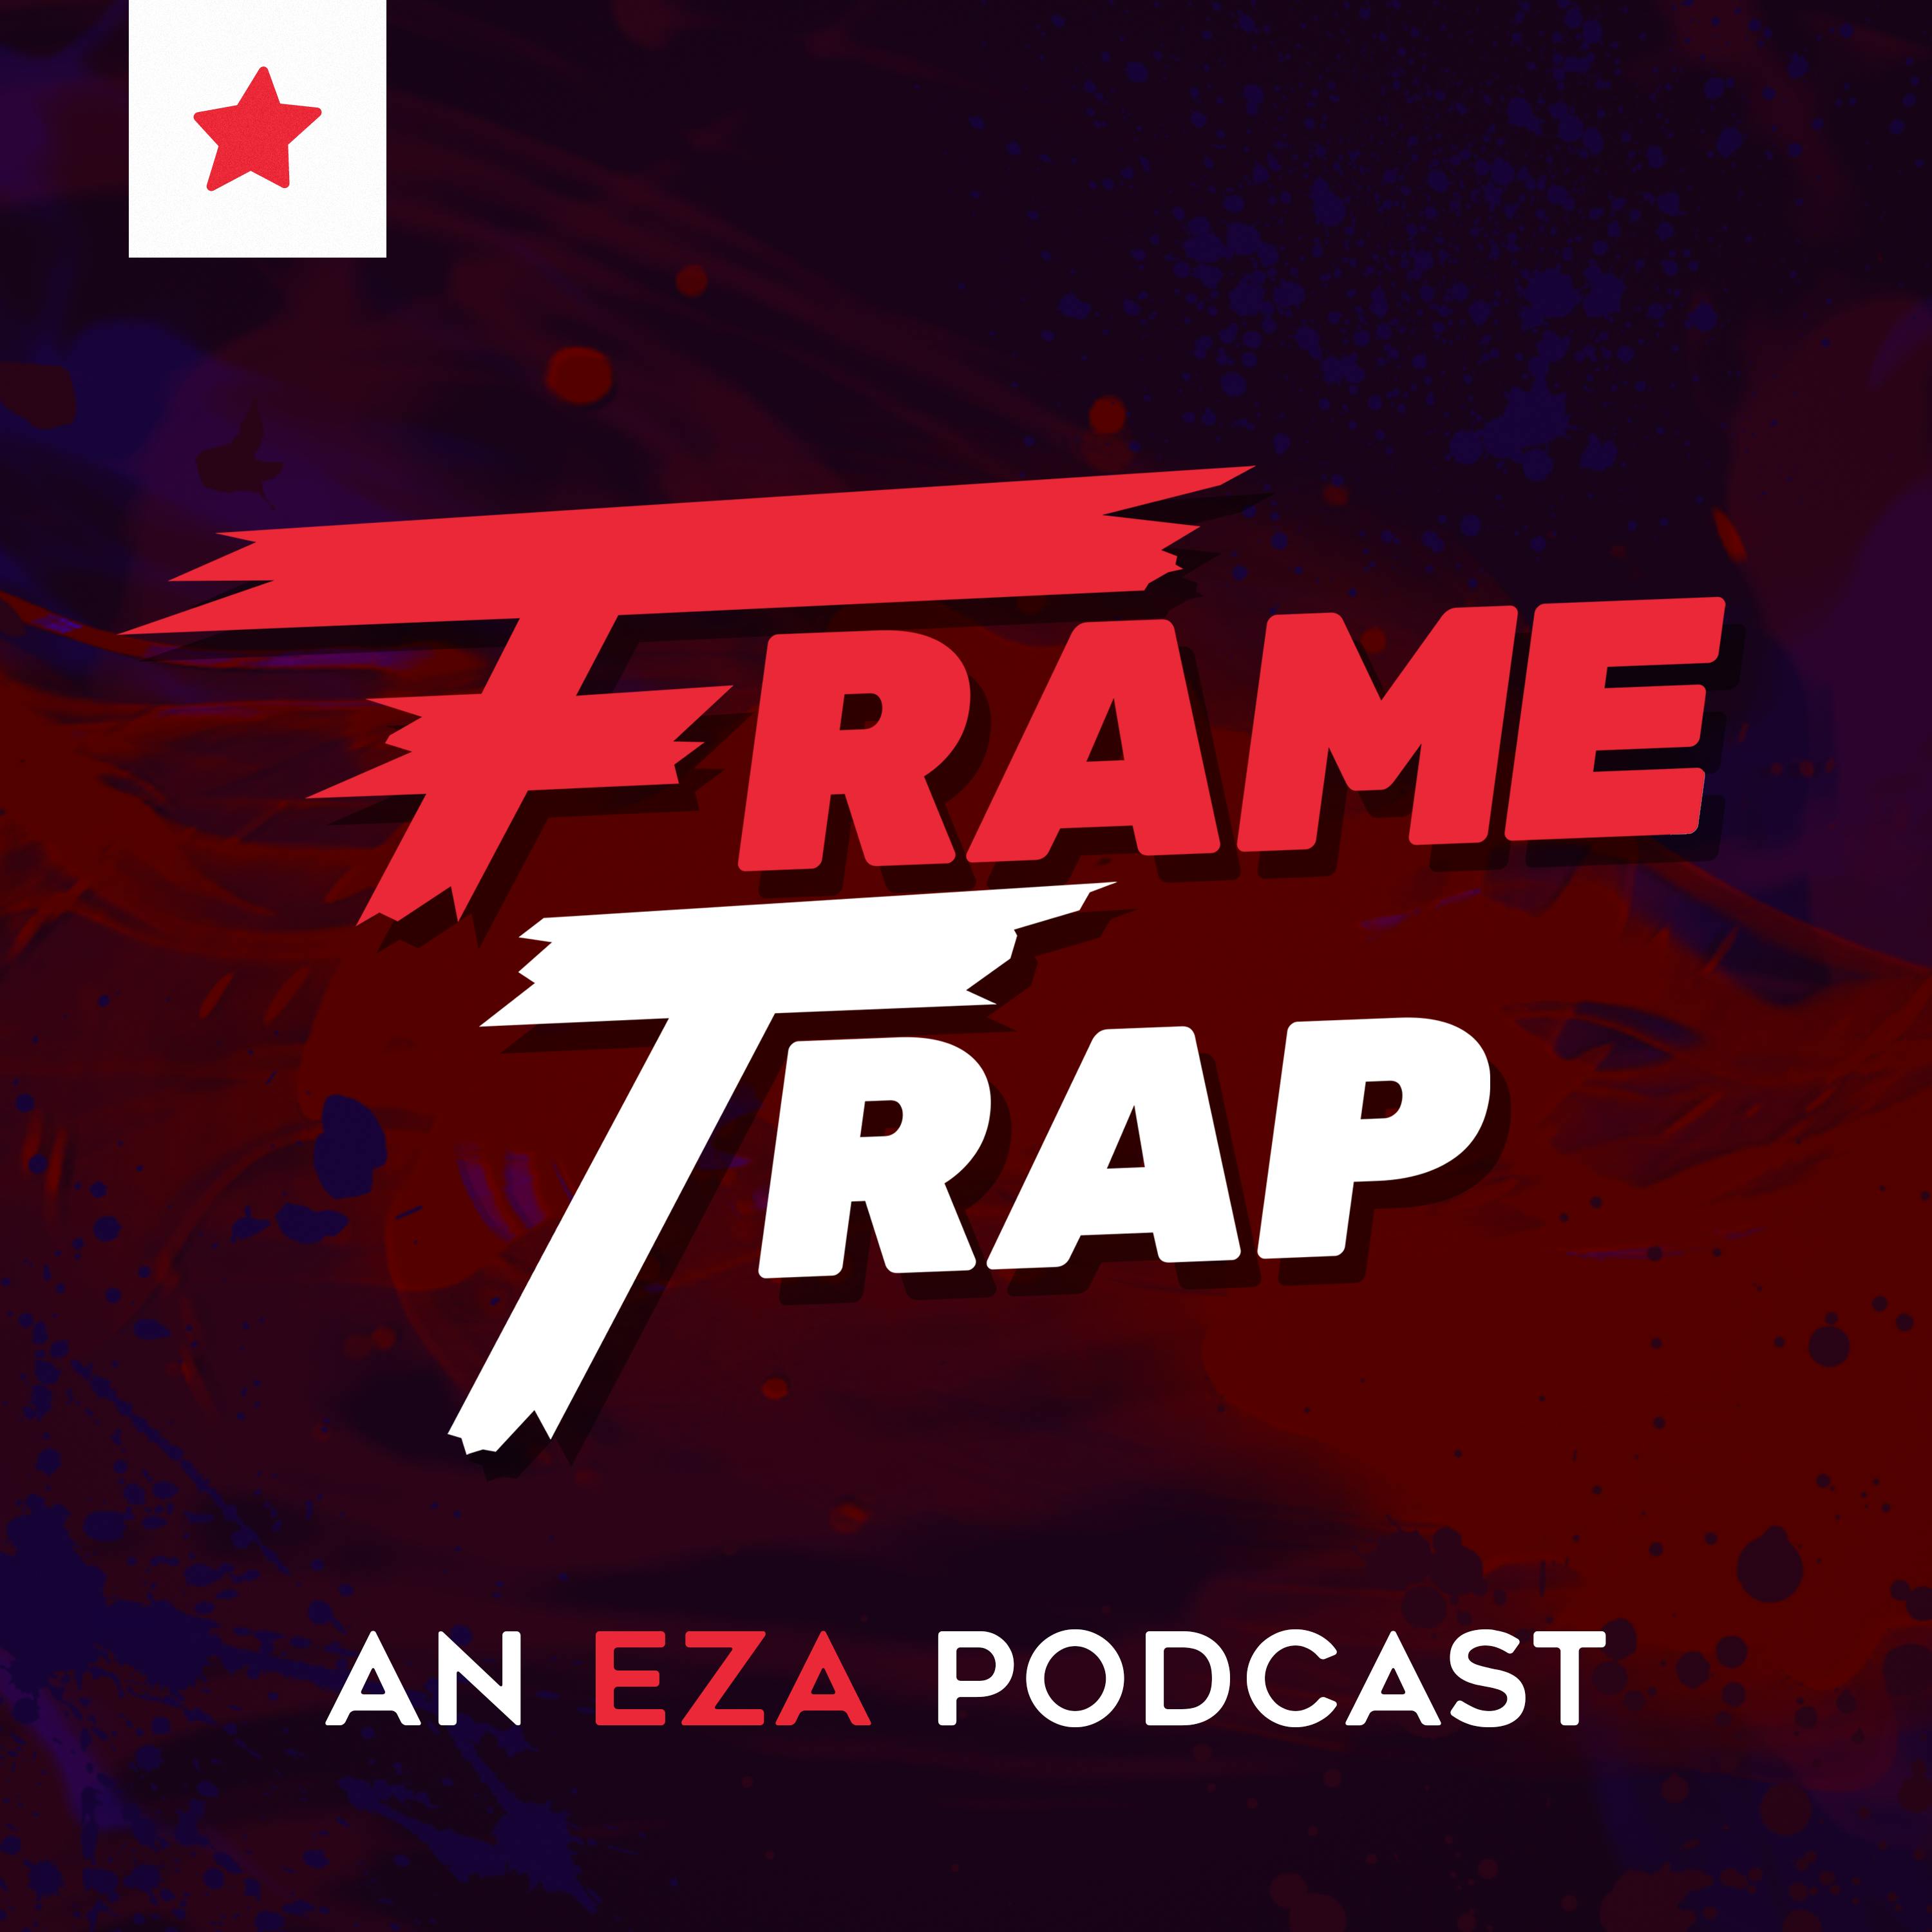 Frame Trap - Episode 185 "Zelda is Taking Over!"